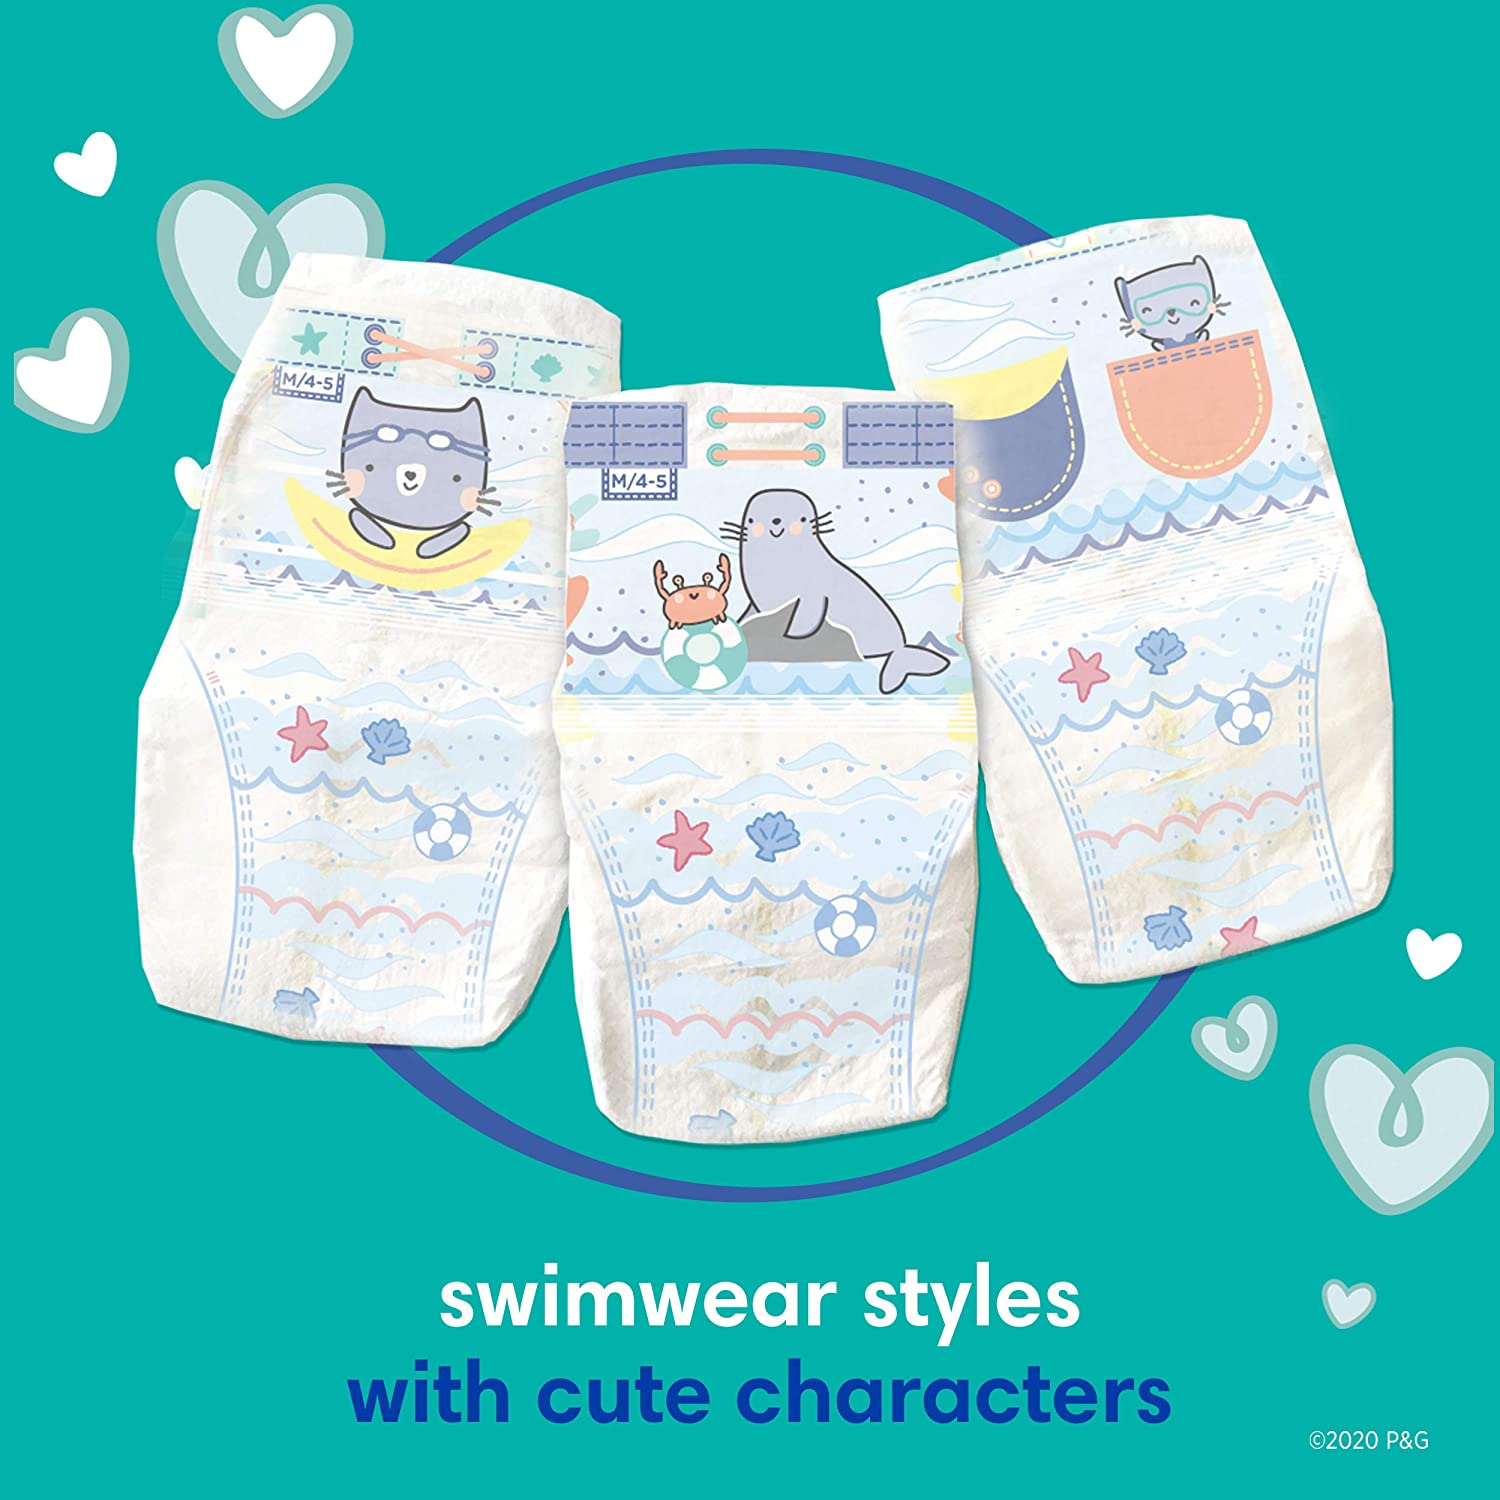 (Tách lẻ) Tã/Bỉm quần bơi, đi biển cho bé USA Pampers Splashers Swim Diapers Size S,M,L